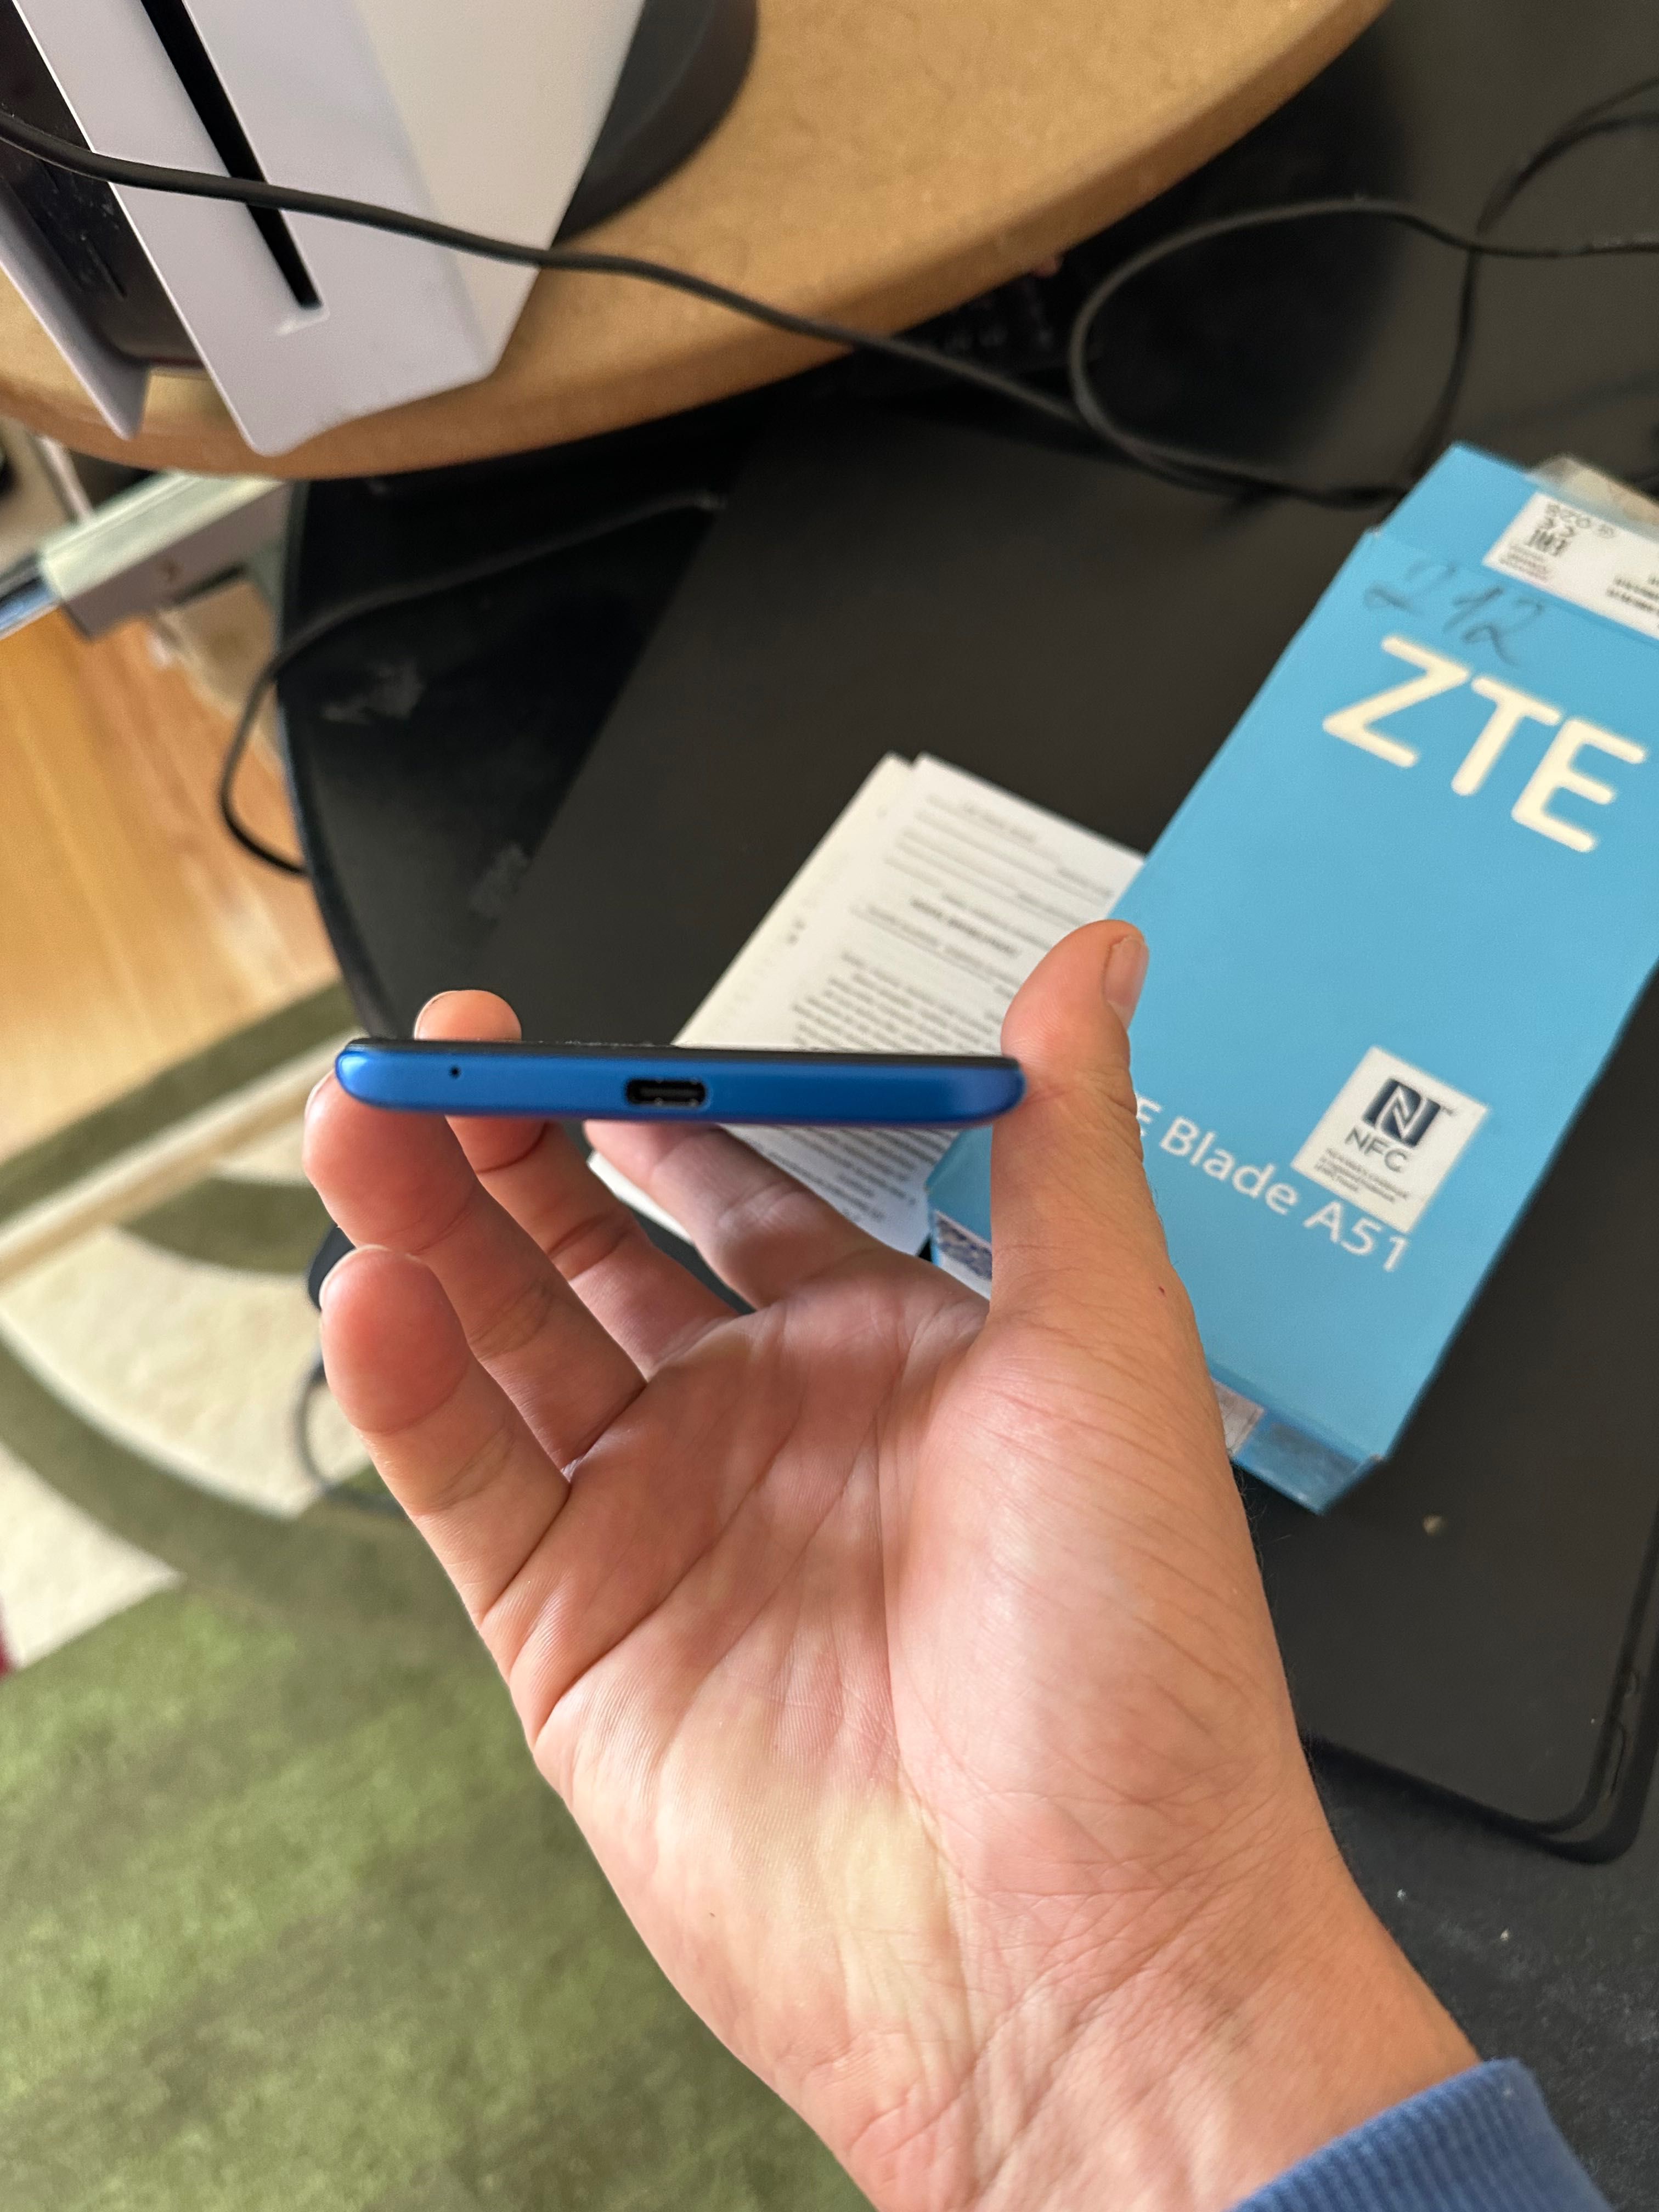 ZtE A51 новый телефон усталмаган каробка бар